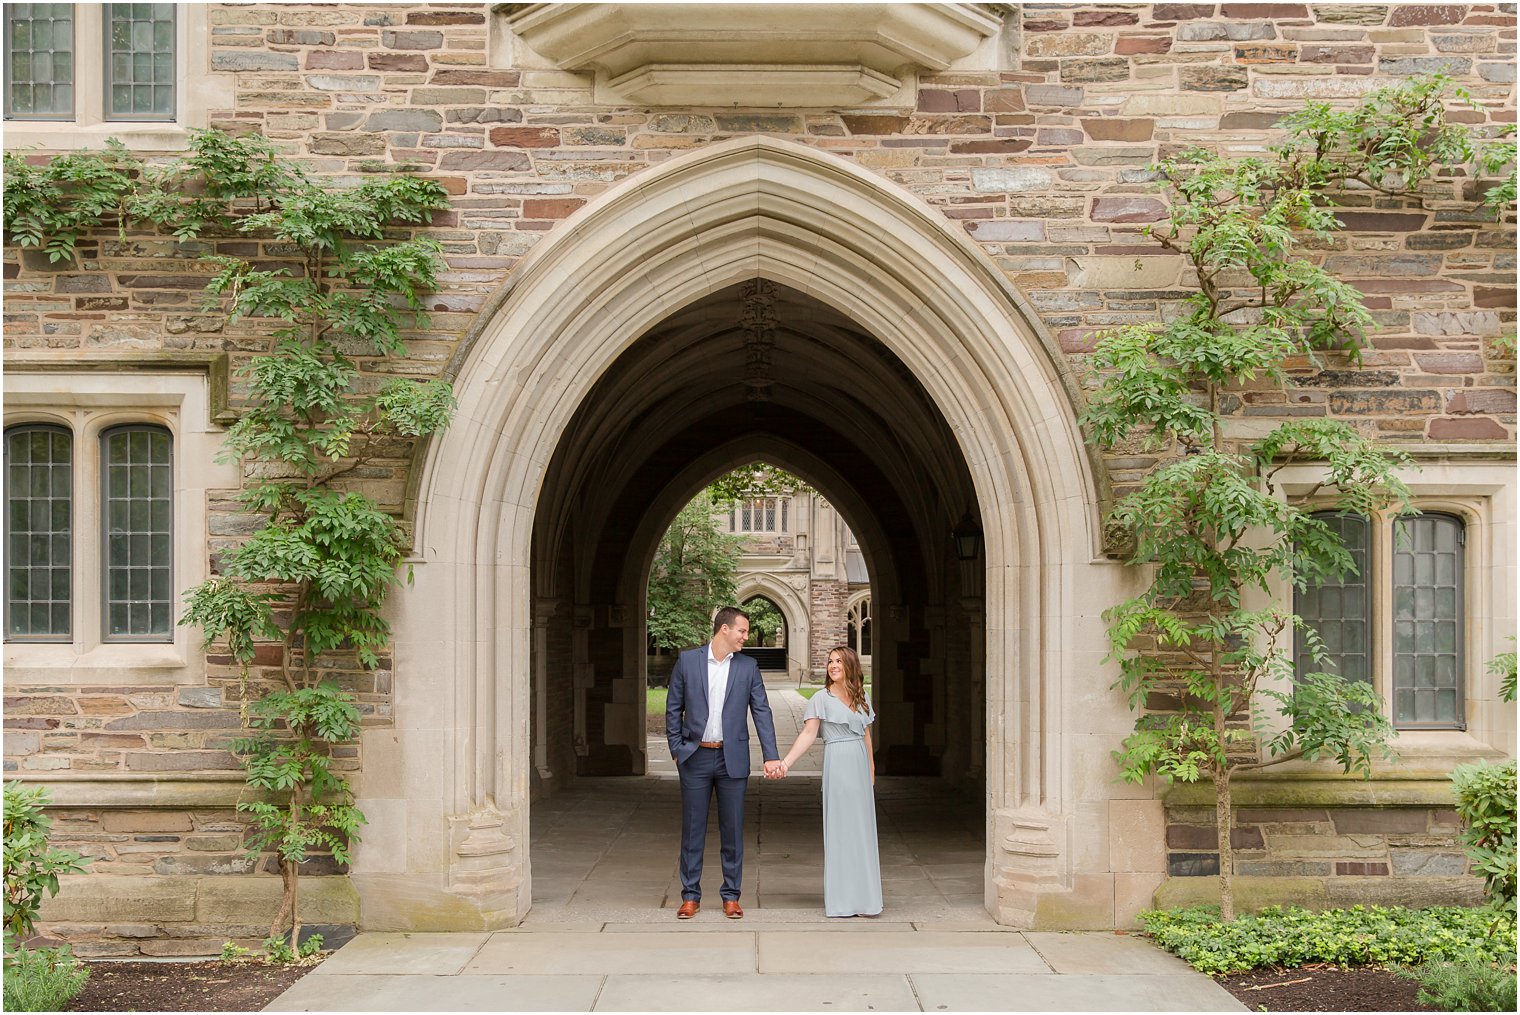 Princeton University engagement portraits by NJ wedding photographers Idalia Photography